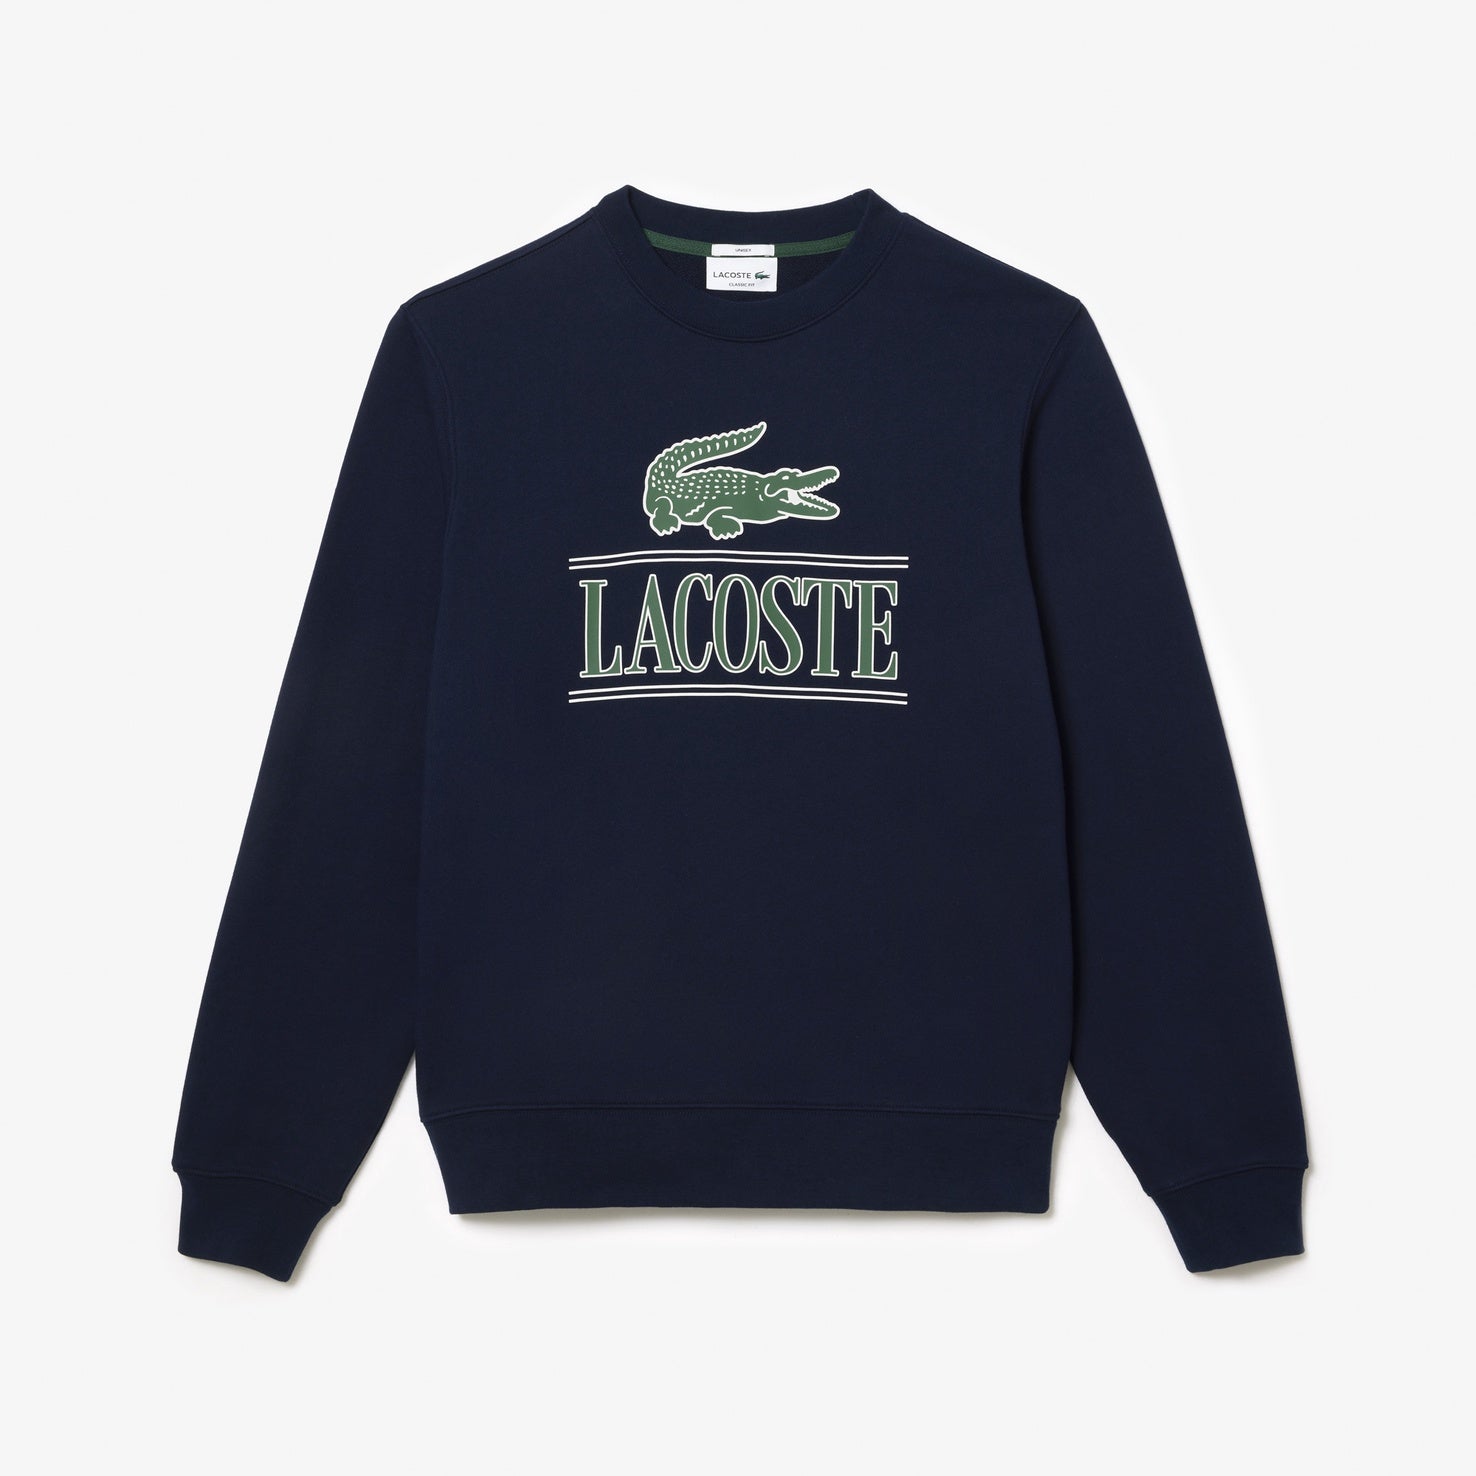 Lacoste Cotton Fleece Branded Sweatshirt Navy Blue SH1228 166